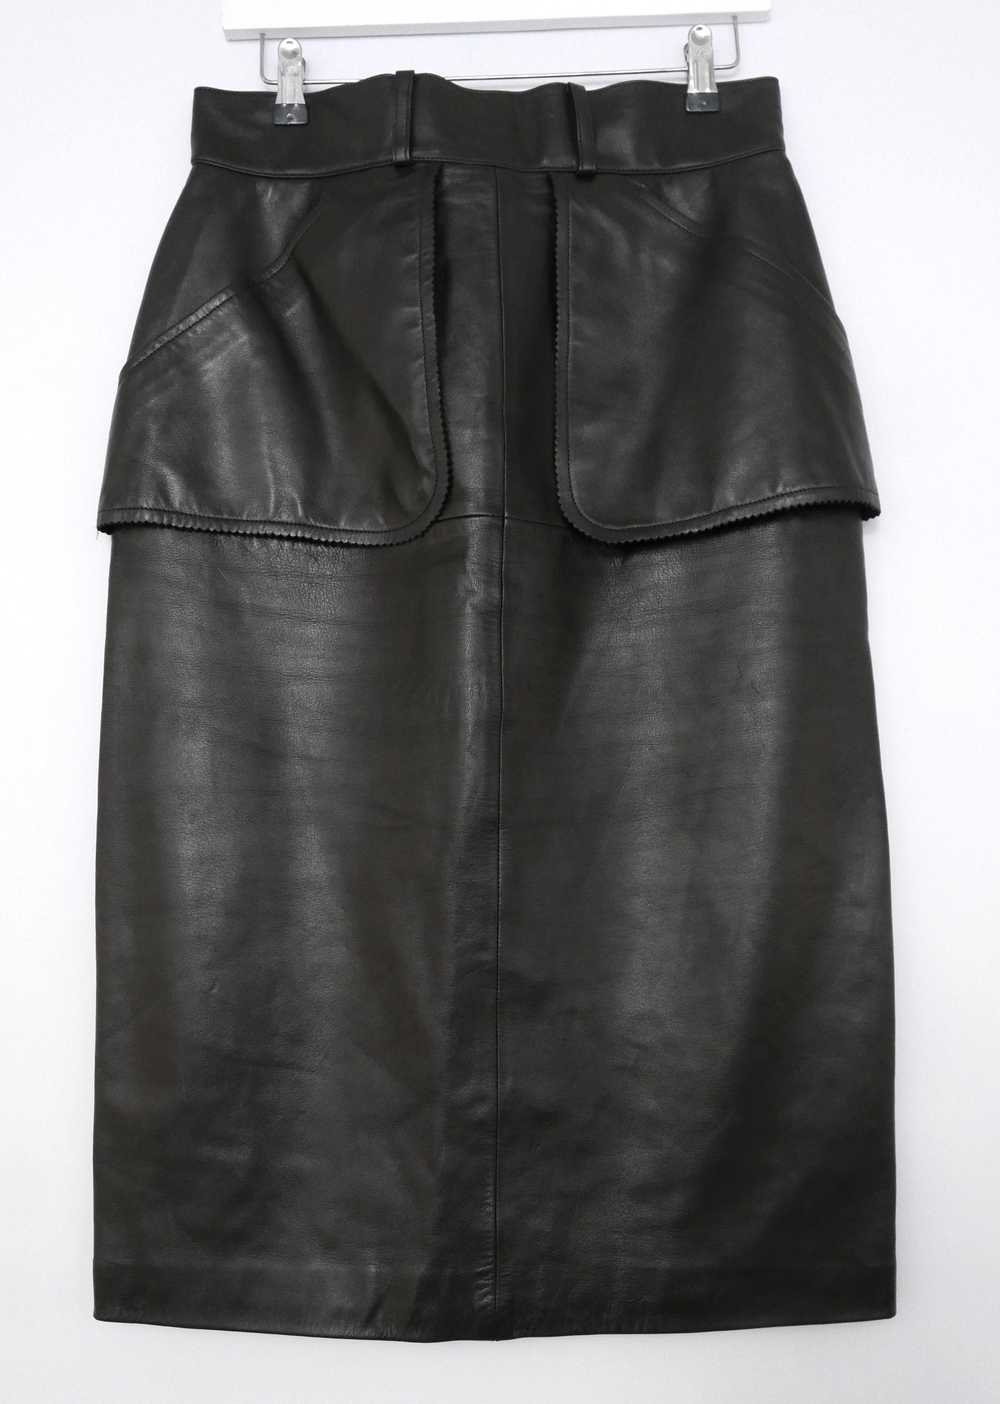 Chanel 90s Vintage Black Leather Skirt - image 2